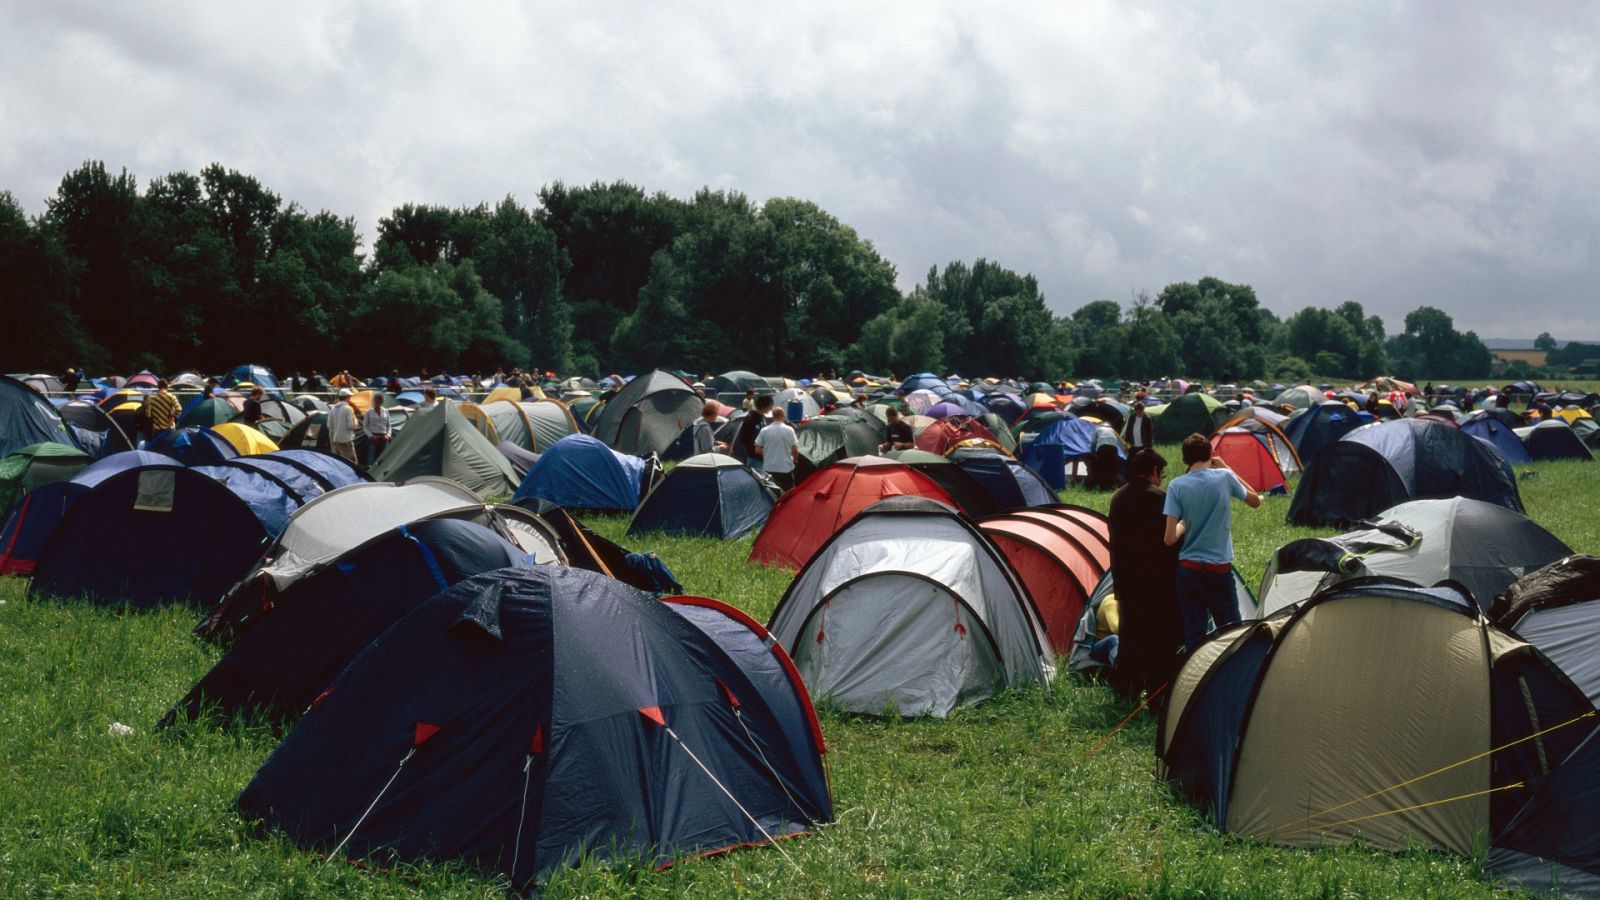 El camping triunfa como alternativa este verano